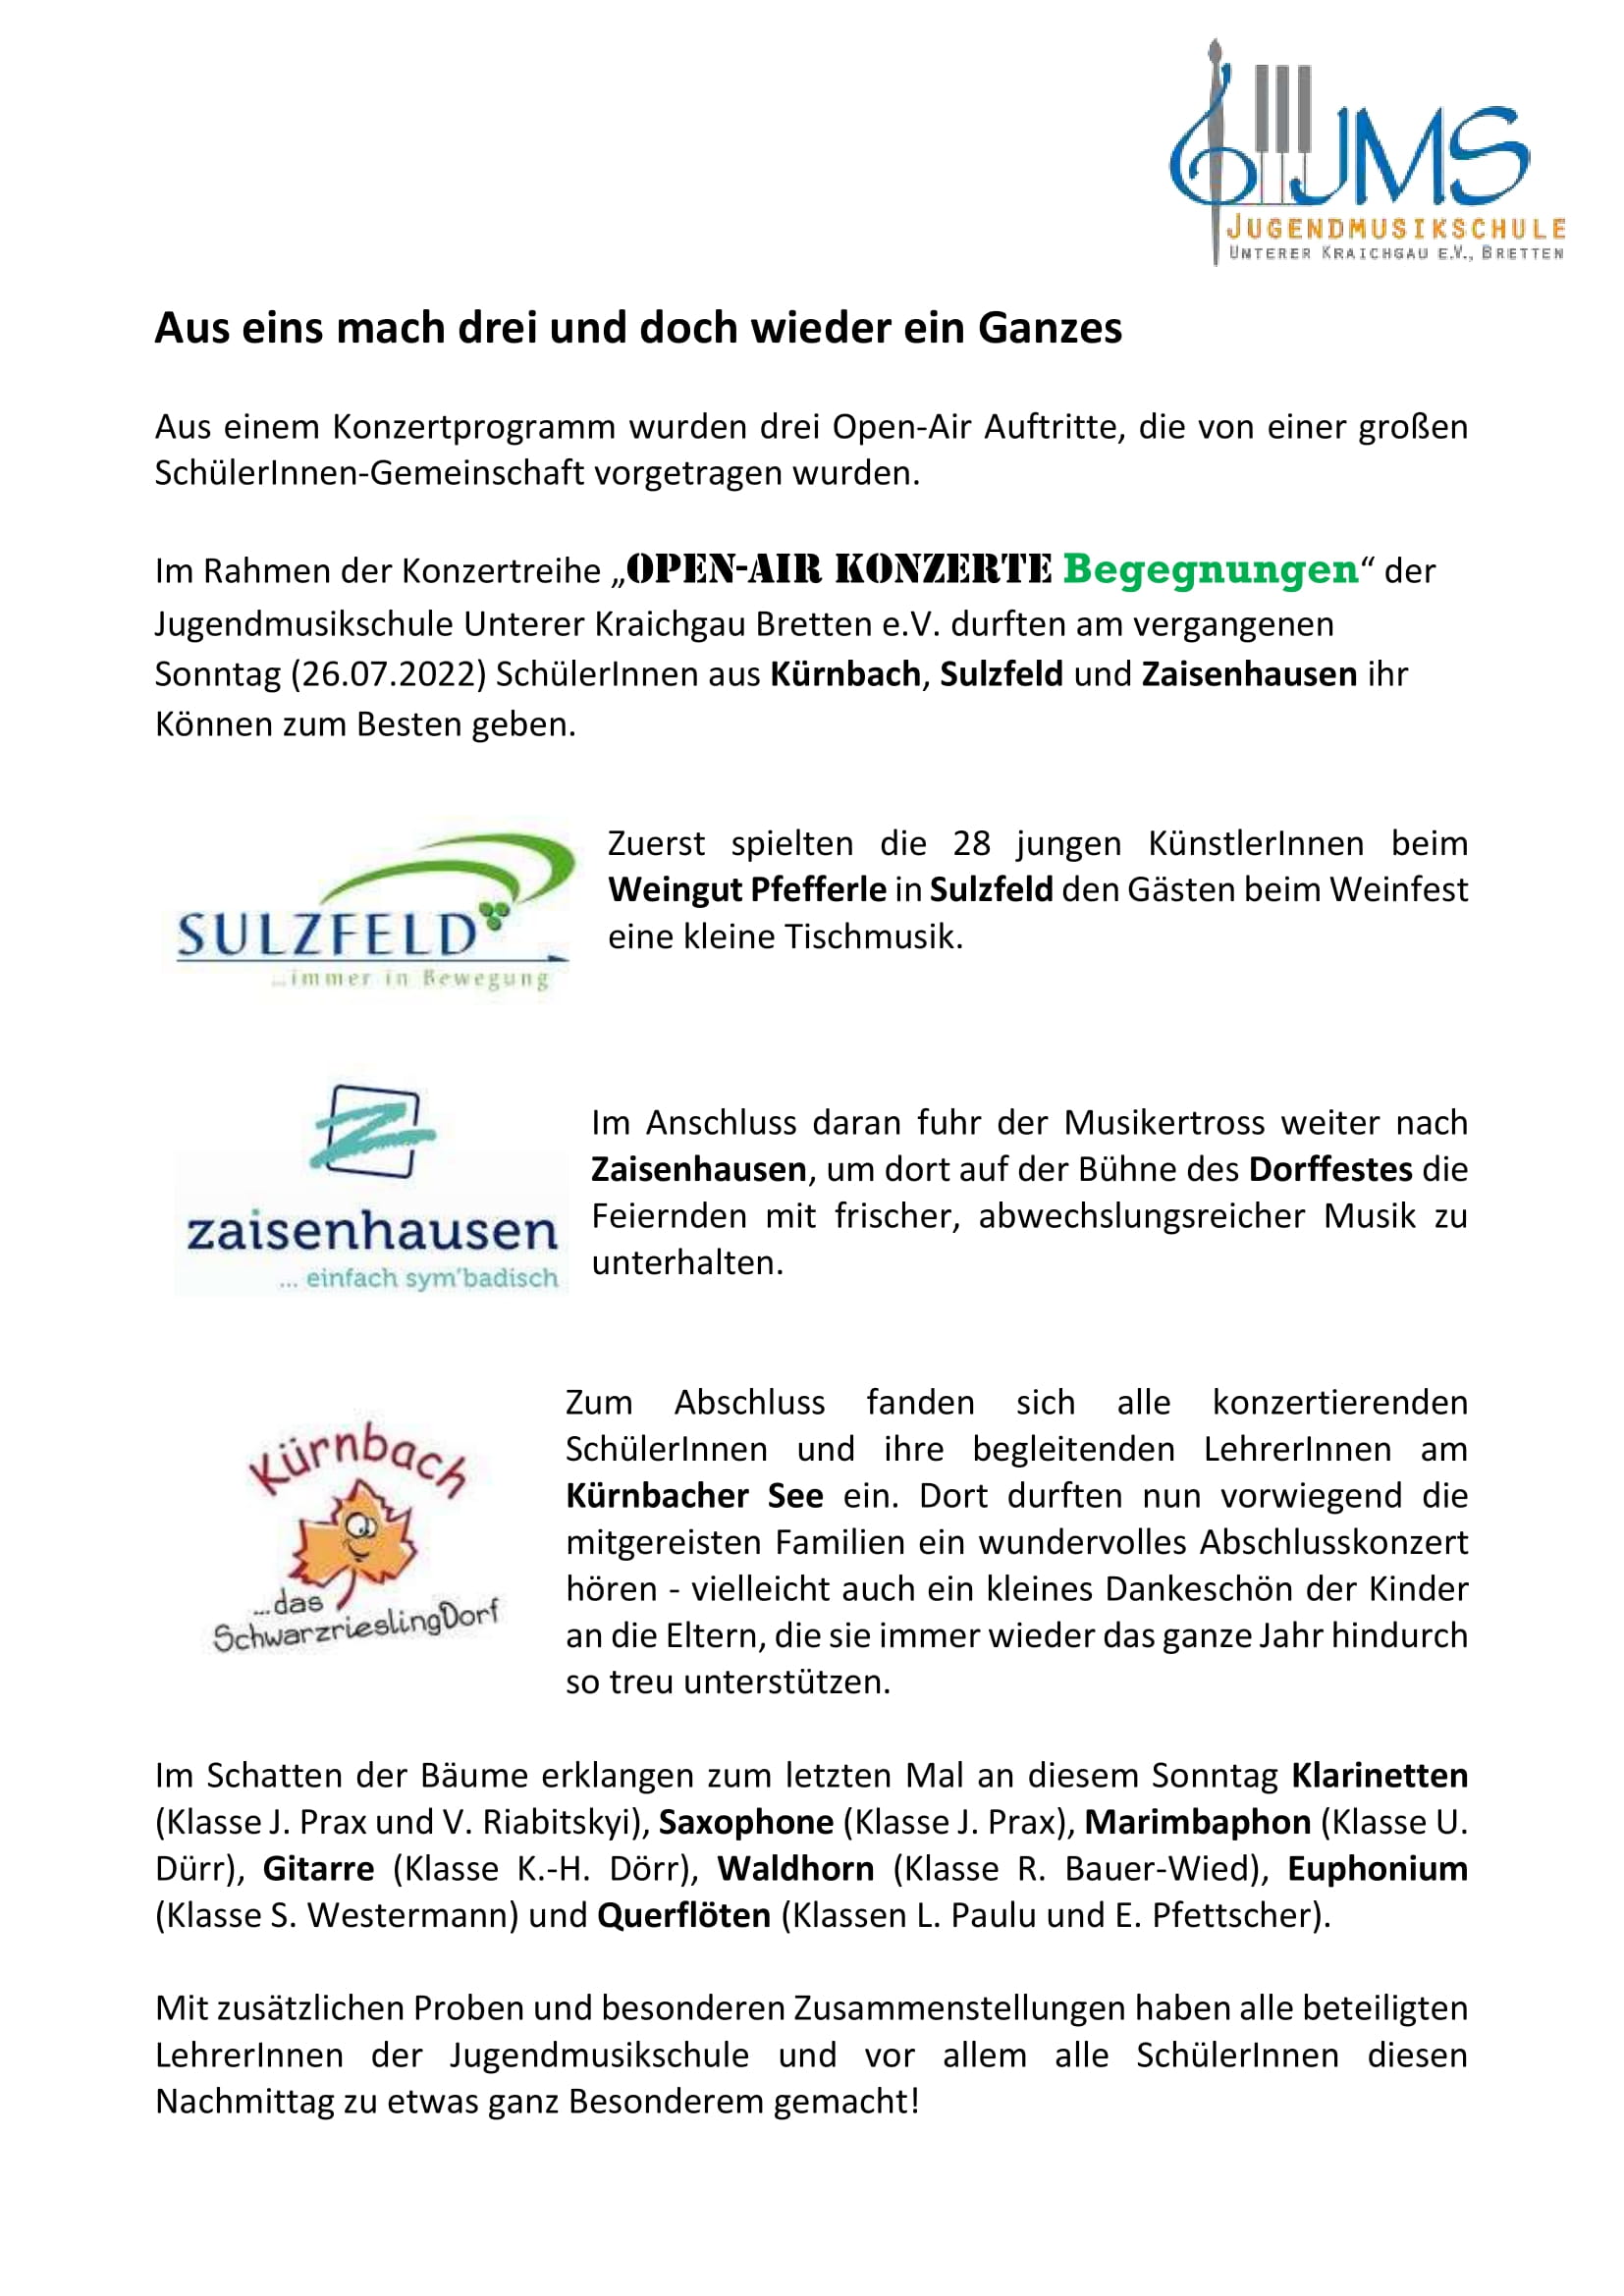 PM Bericht 26.Juni 2022 Open Air Sulzfeld Zaisenhausen Kürnbach 2022